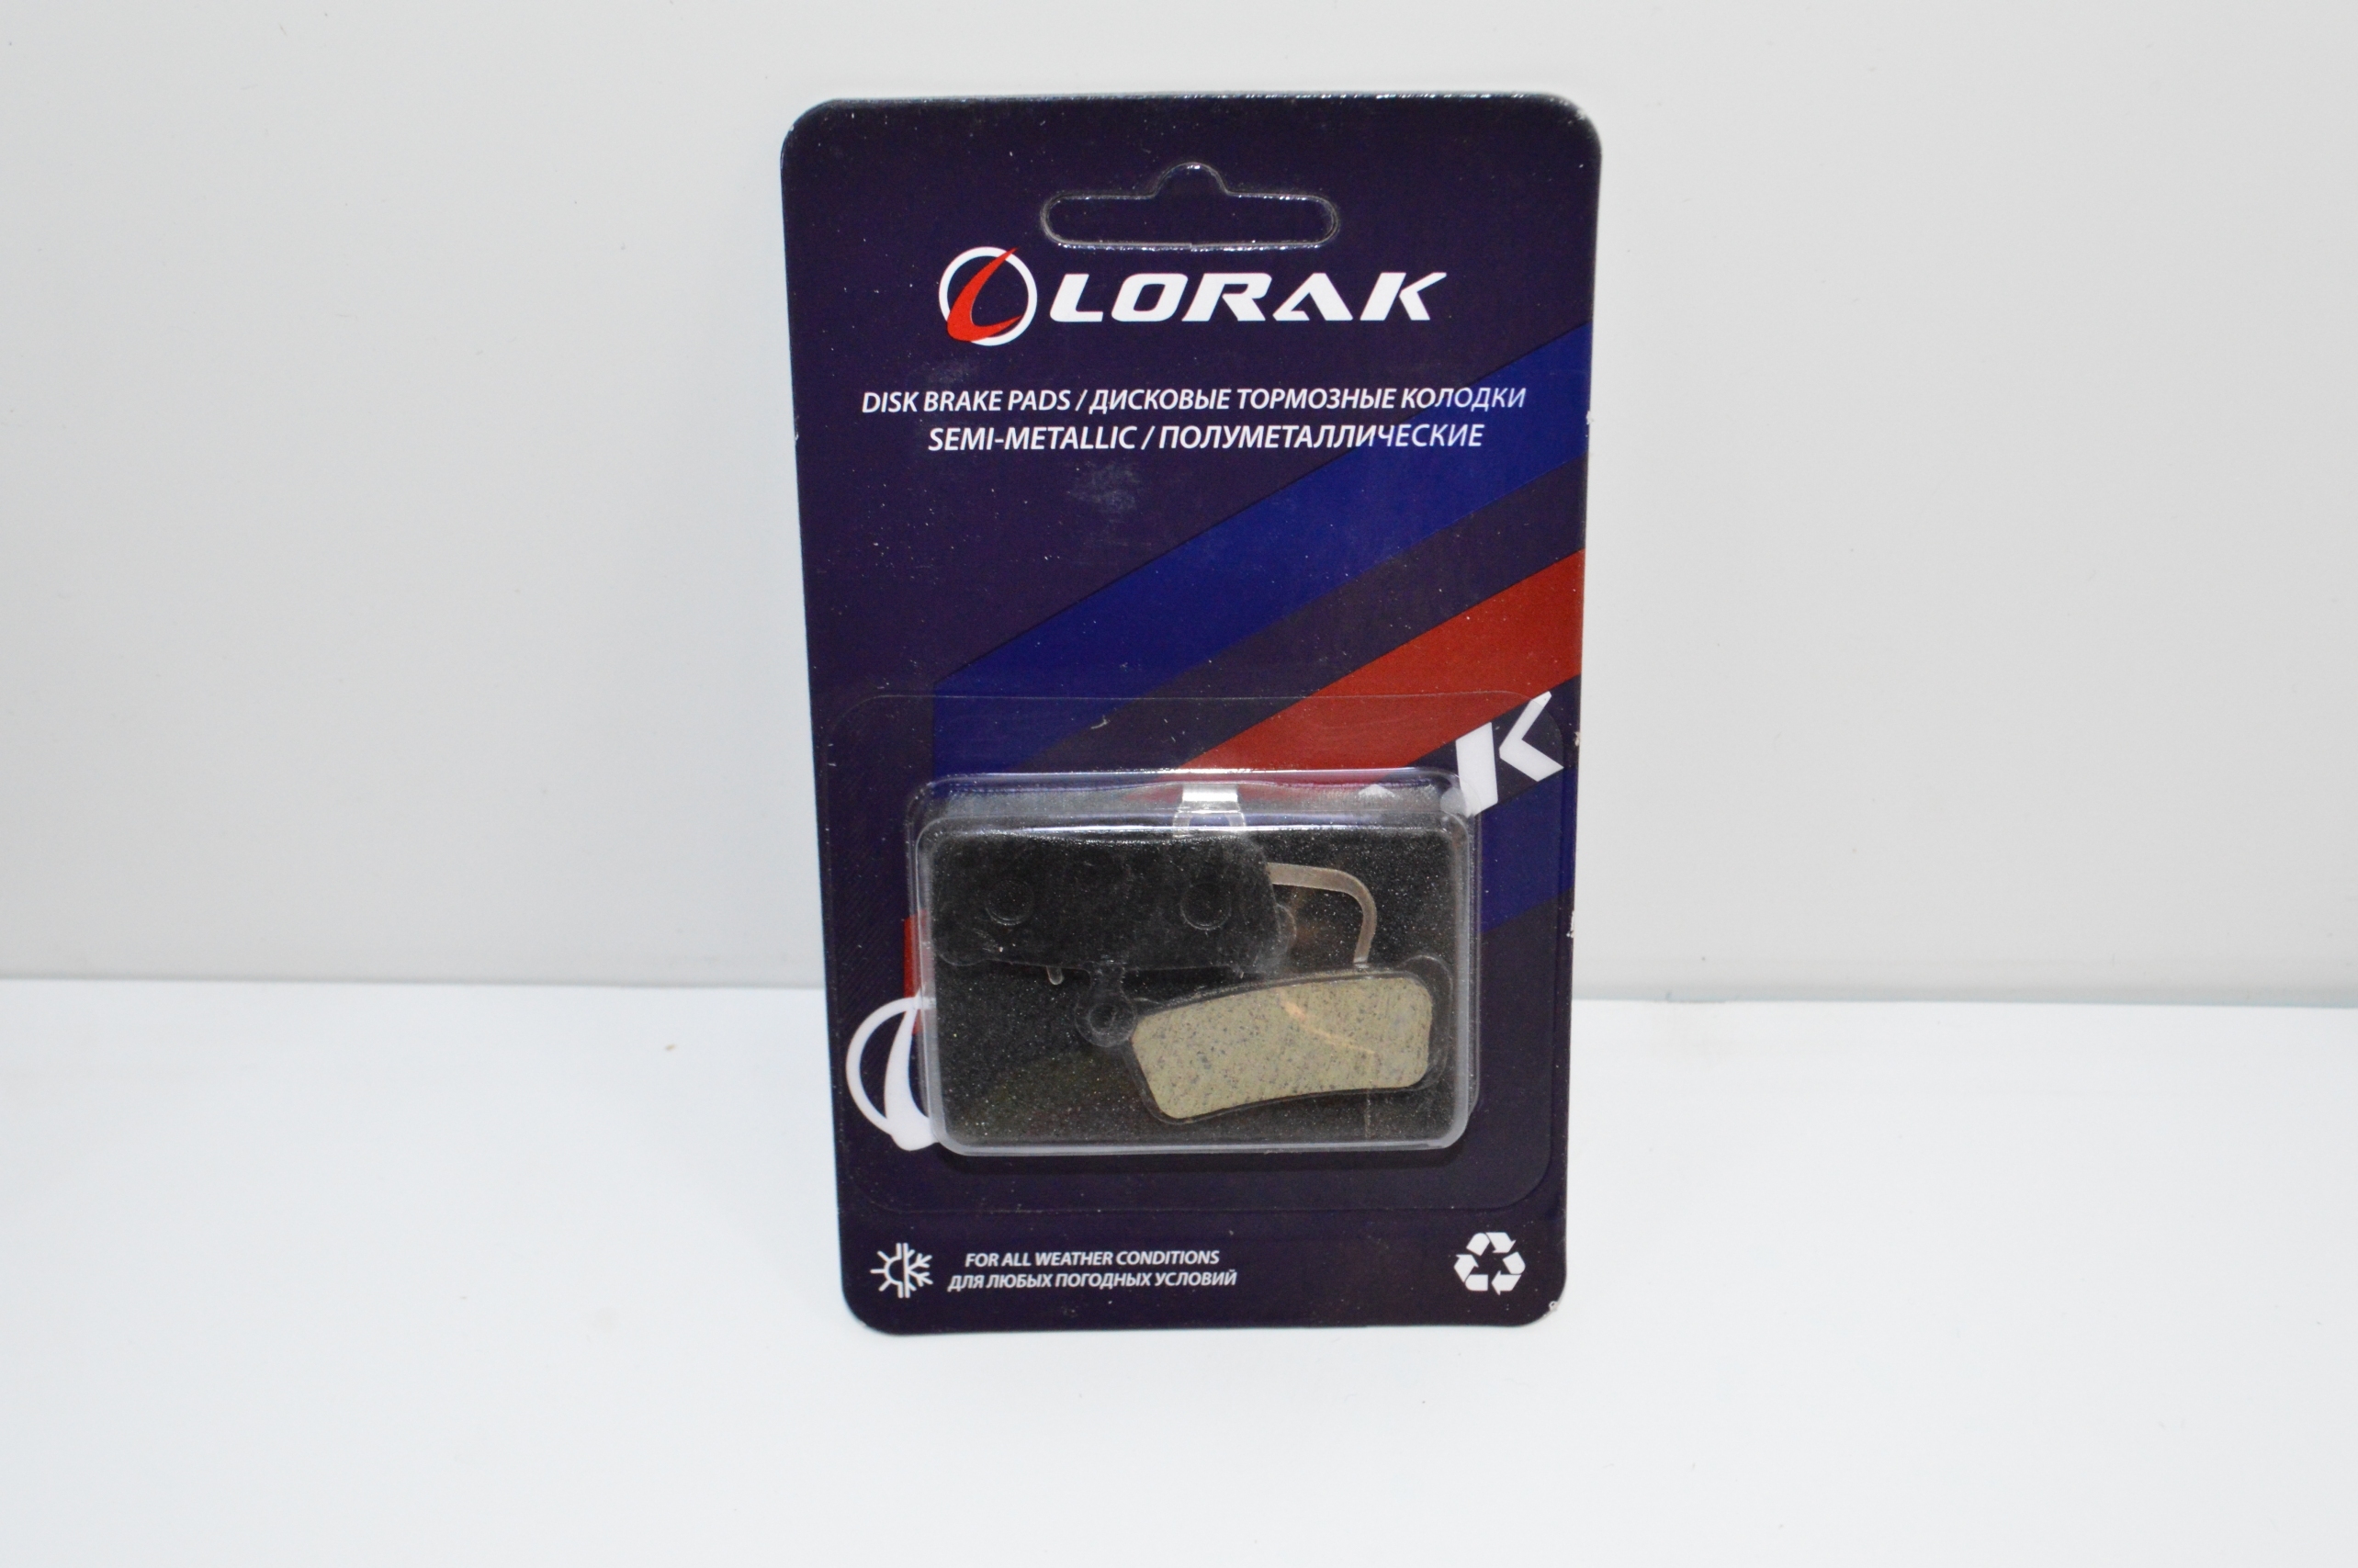 Колодка для диска Lorak P-13, код 40924